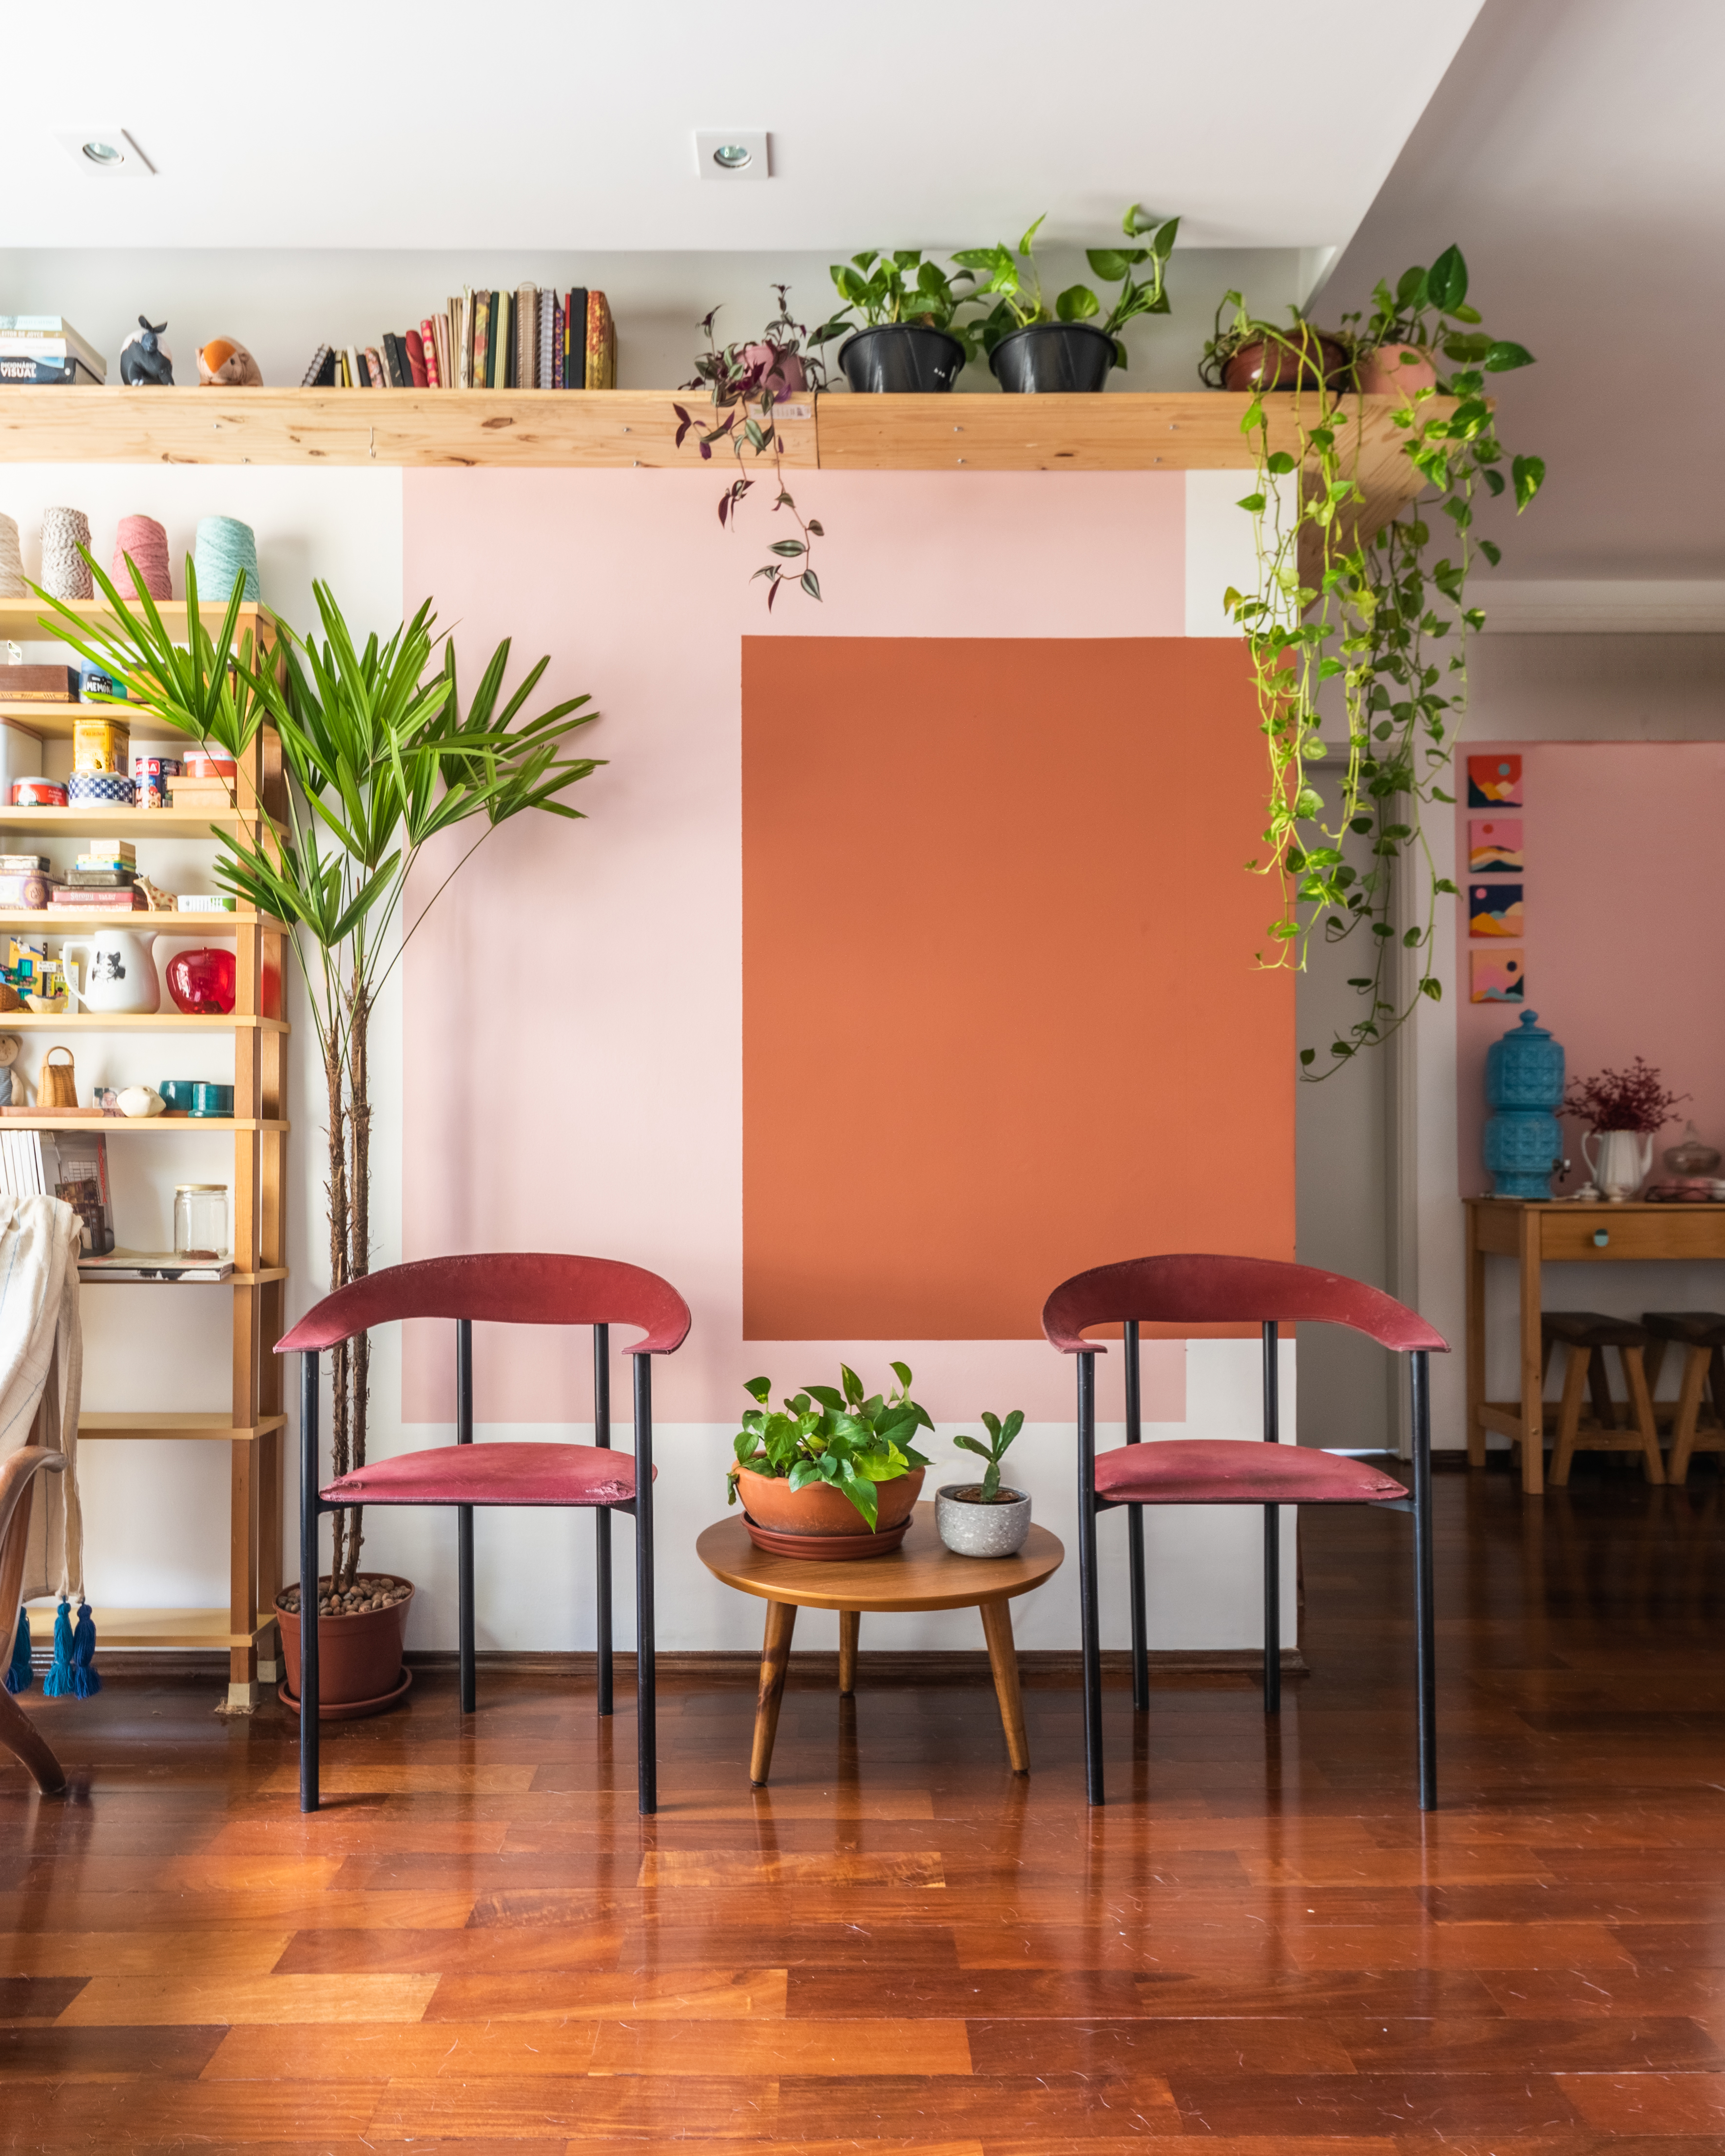 Sala de estar com parede rosa e pintura geométrica terracota, plantas suspensas e palmeira.